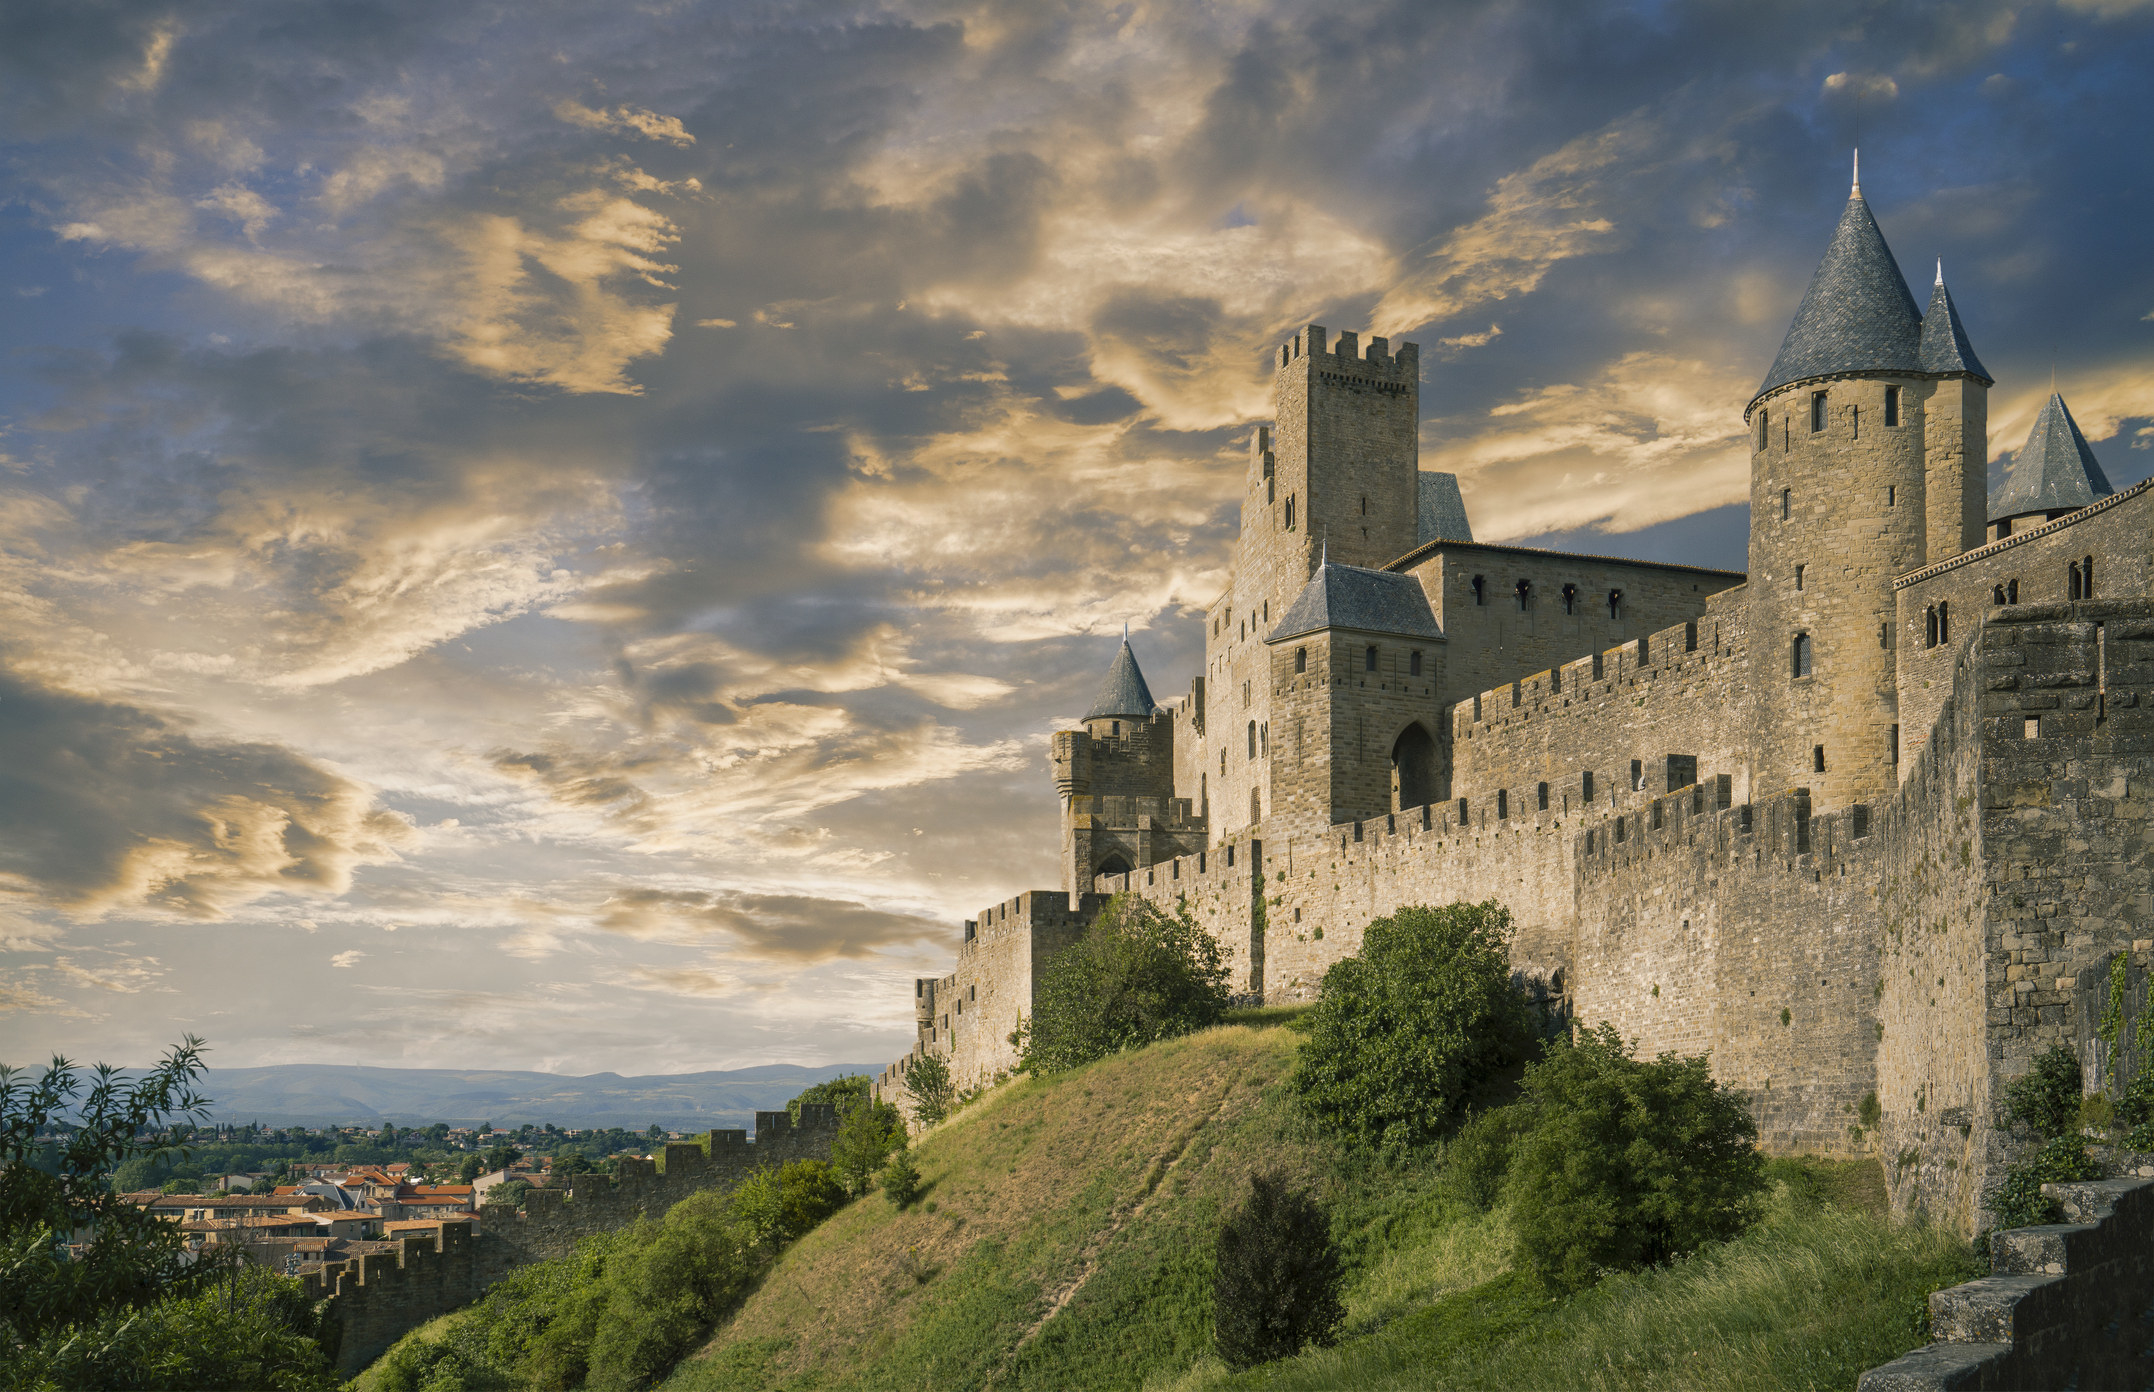 Cité de Carcassonne medieval fortress